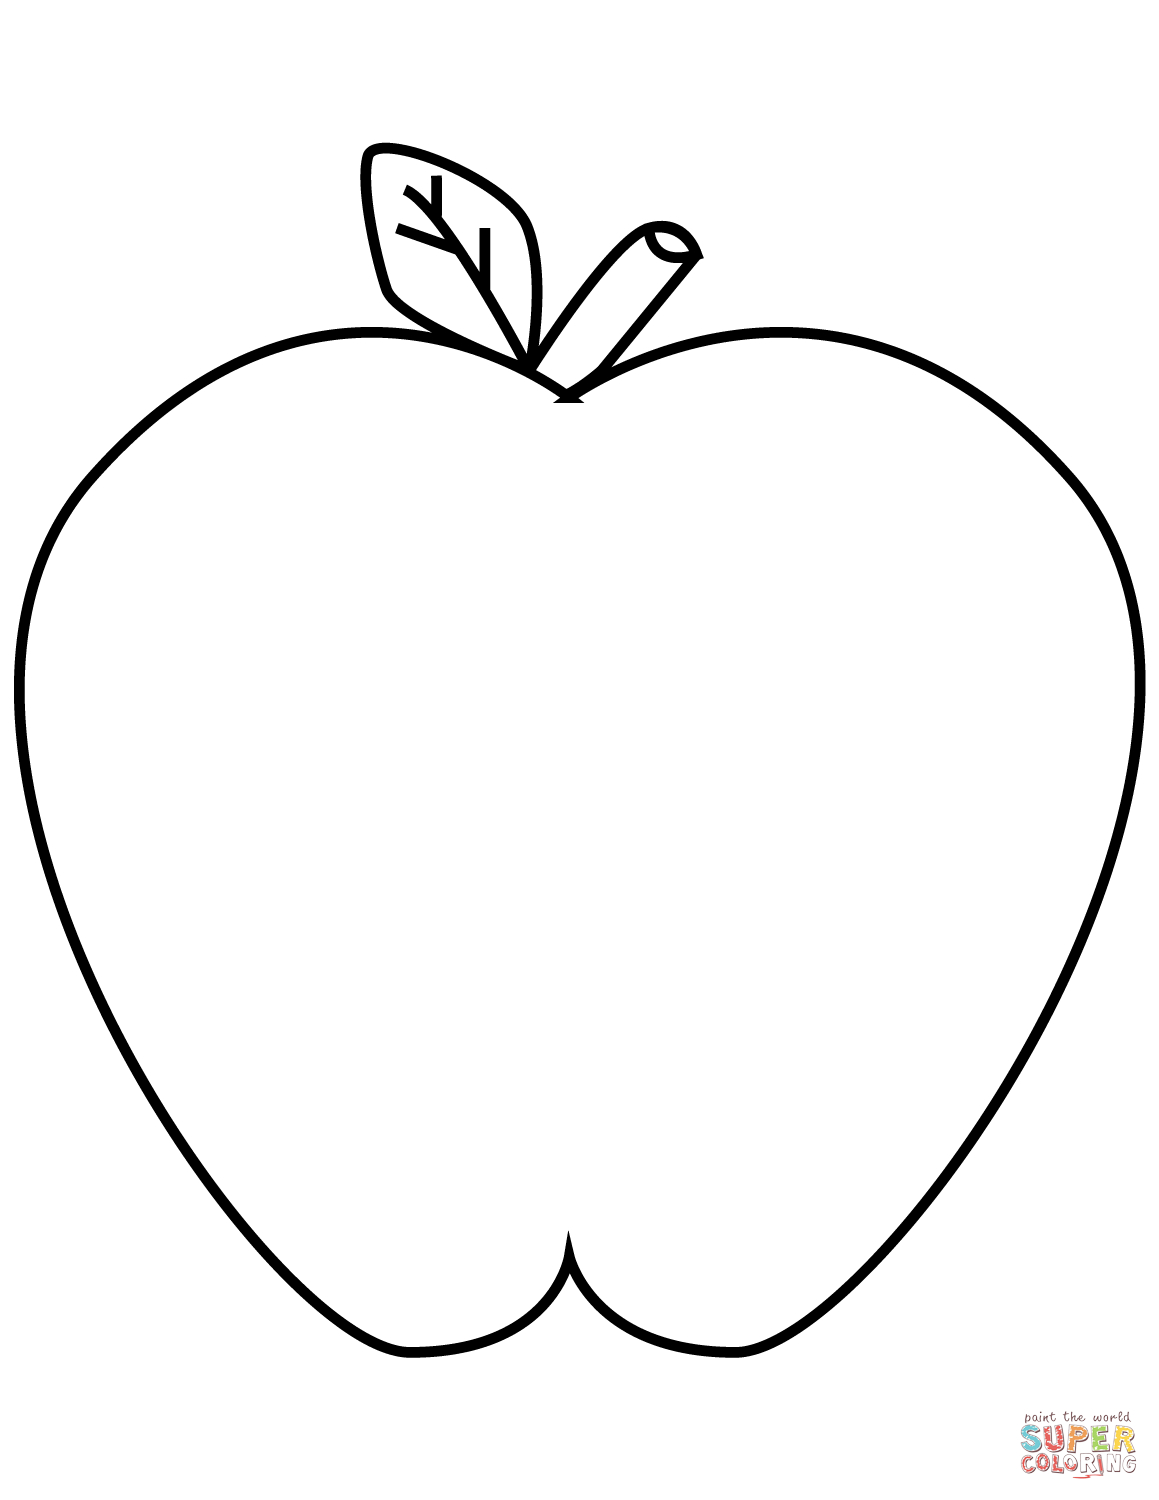 Green Apple Drawing At Getdrawings | Free Download verwandt mit Apfel Malvorlage